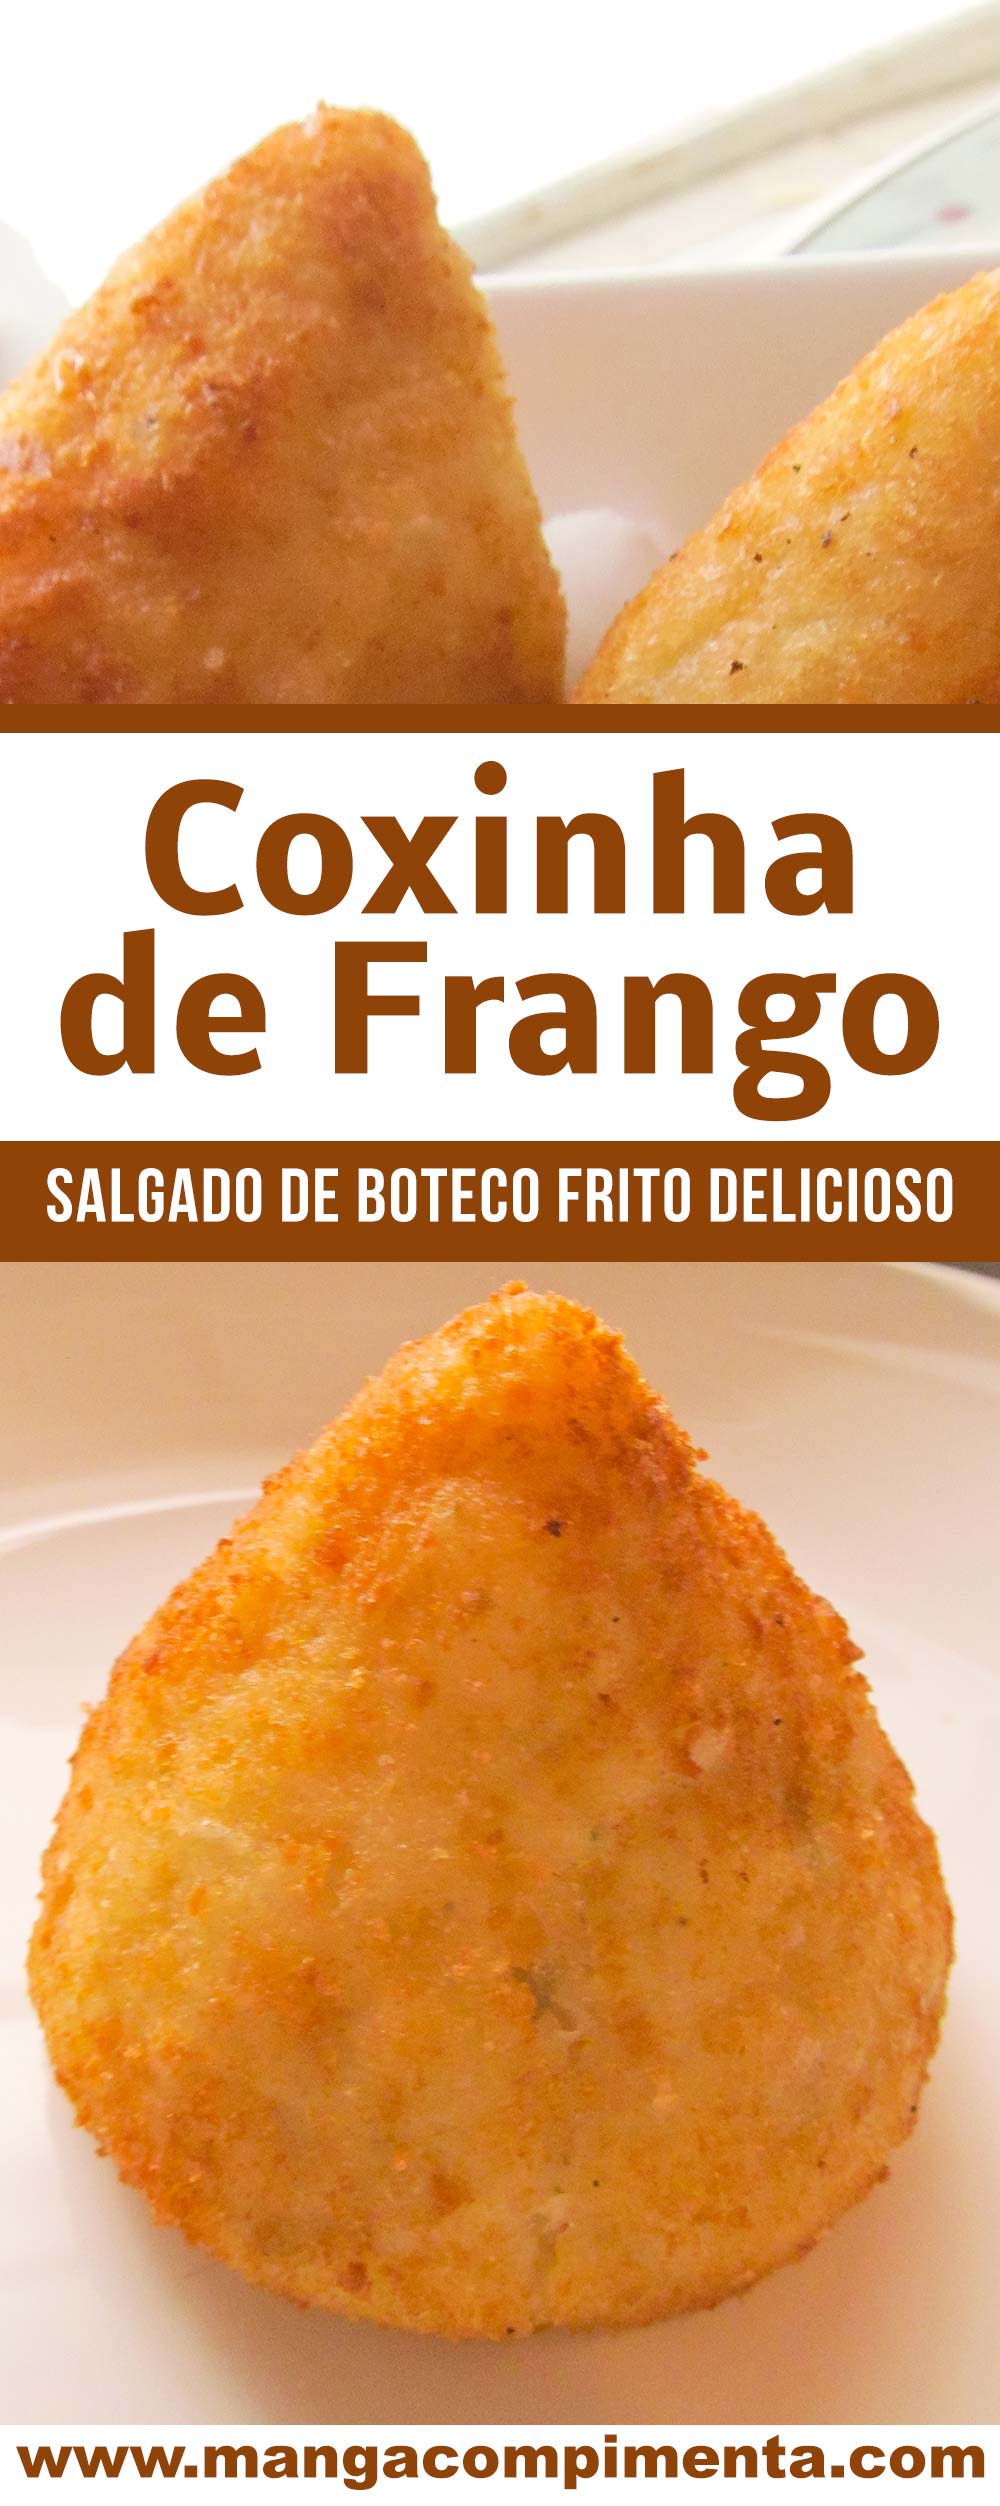 Coxinha de Frango - um petisco de boteco delicioso para beliscar!